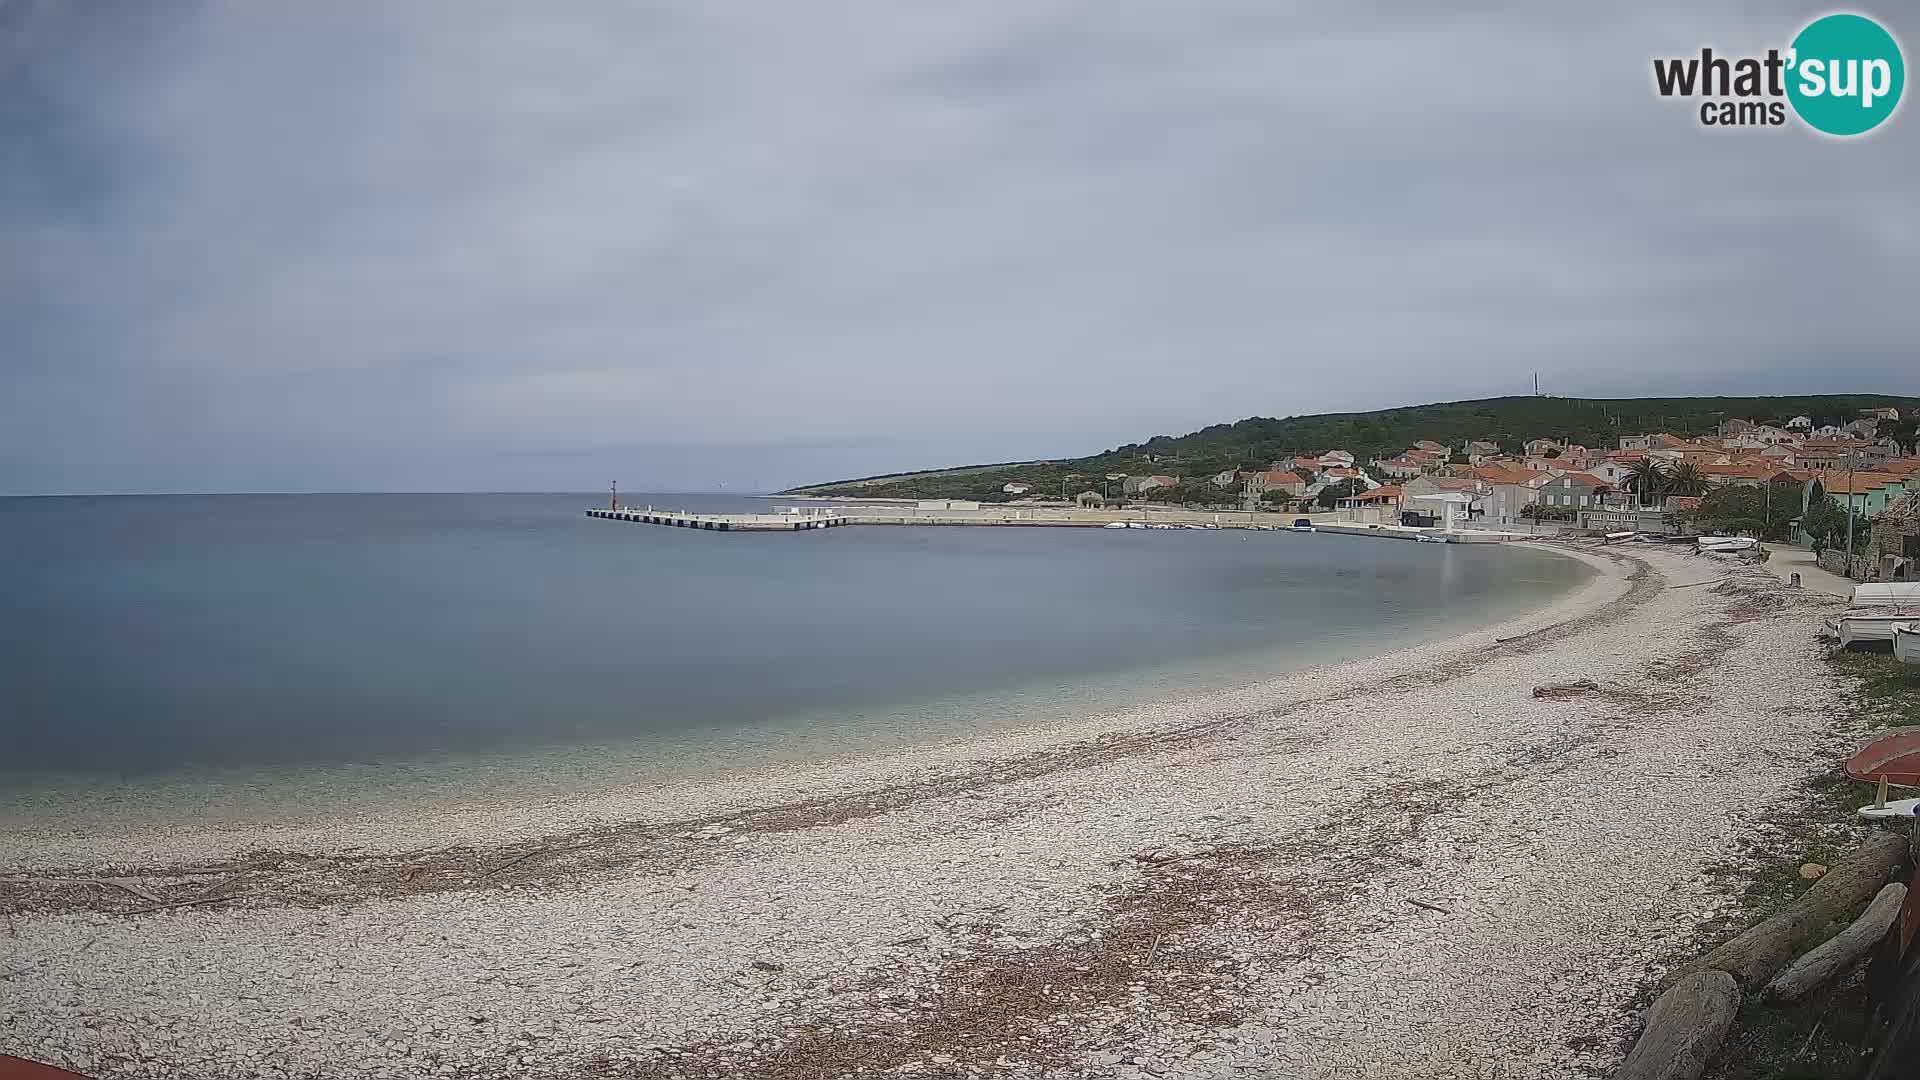 Unije strand webcam